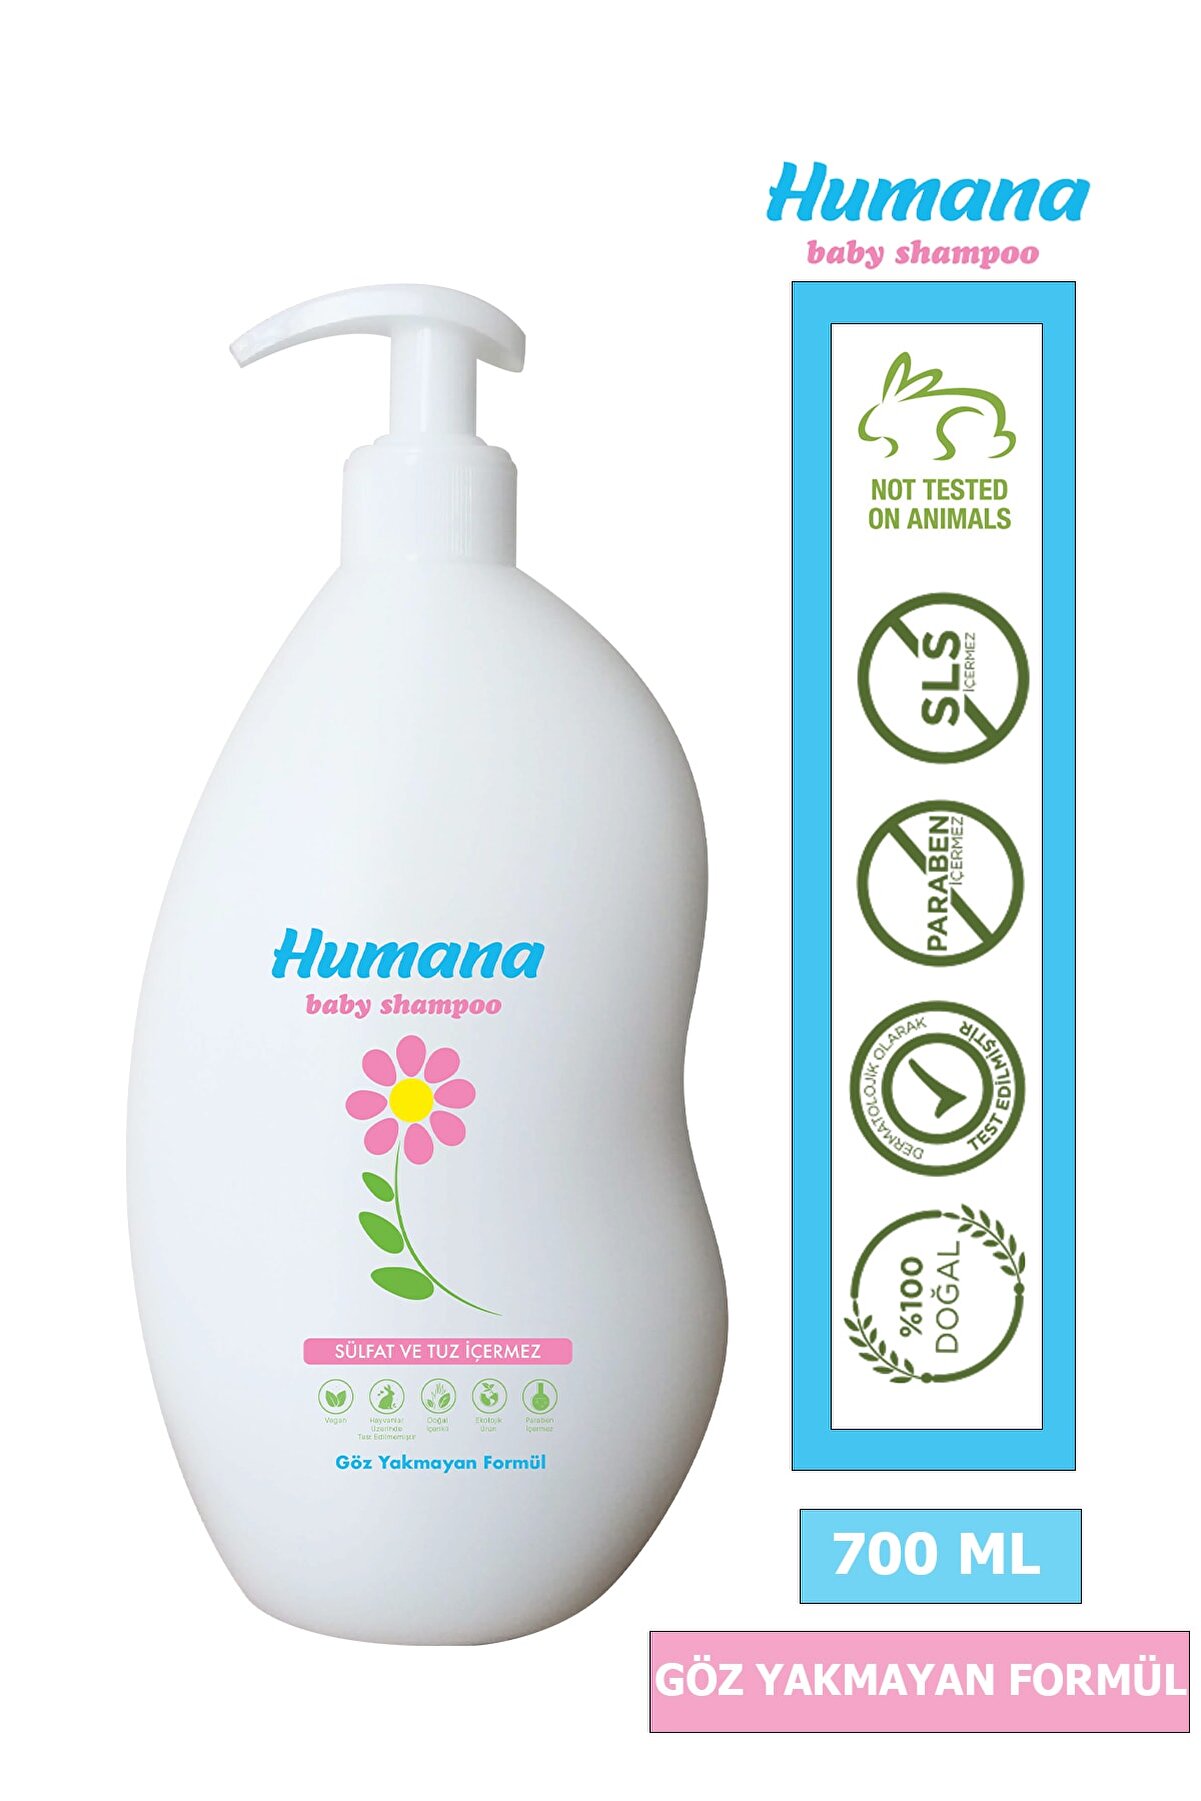 Humana Sülfatsız Parabensiz Doğal Bebek Şampuanı 700 ml